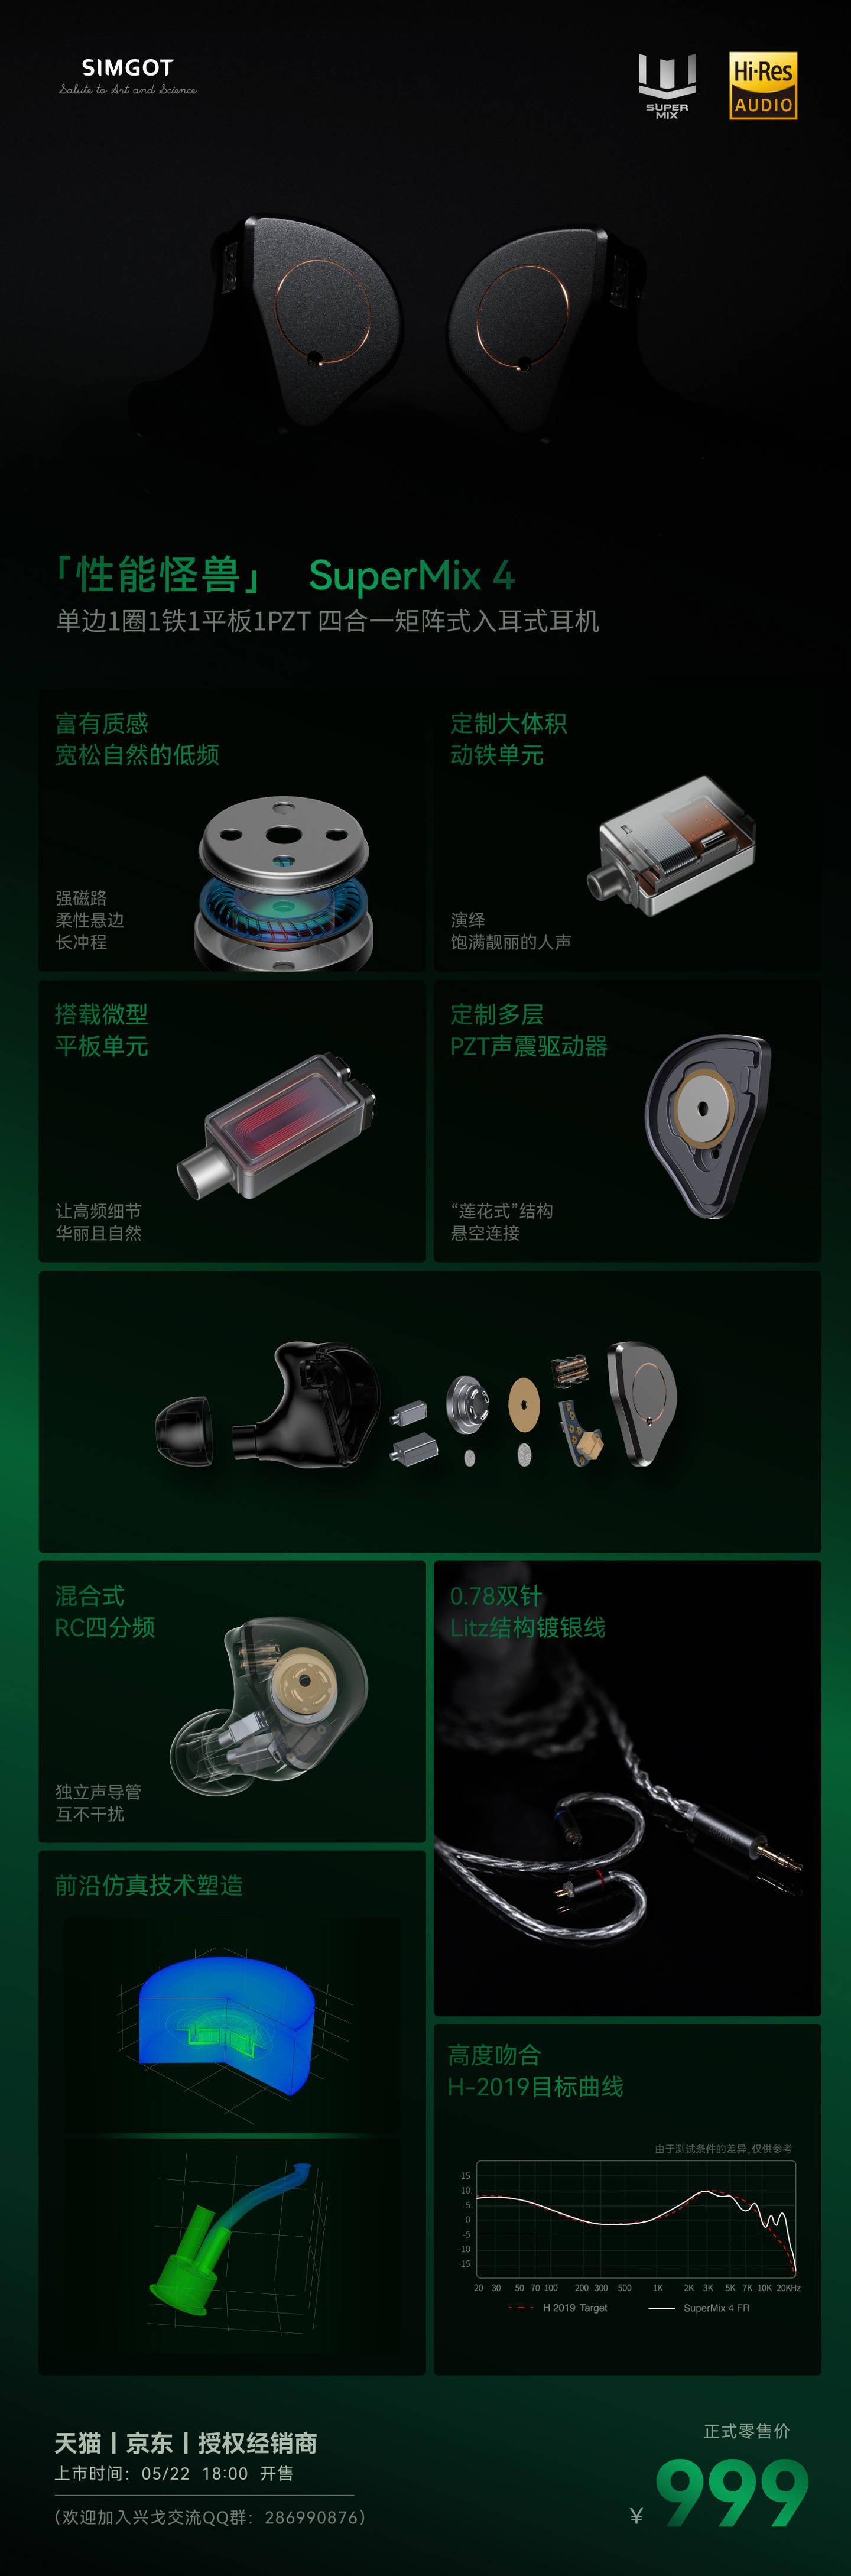 兴戈 SIMGOT 推出 SuperMix 4、EM10、EM10 钛马限量版入耳式耳机